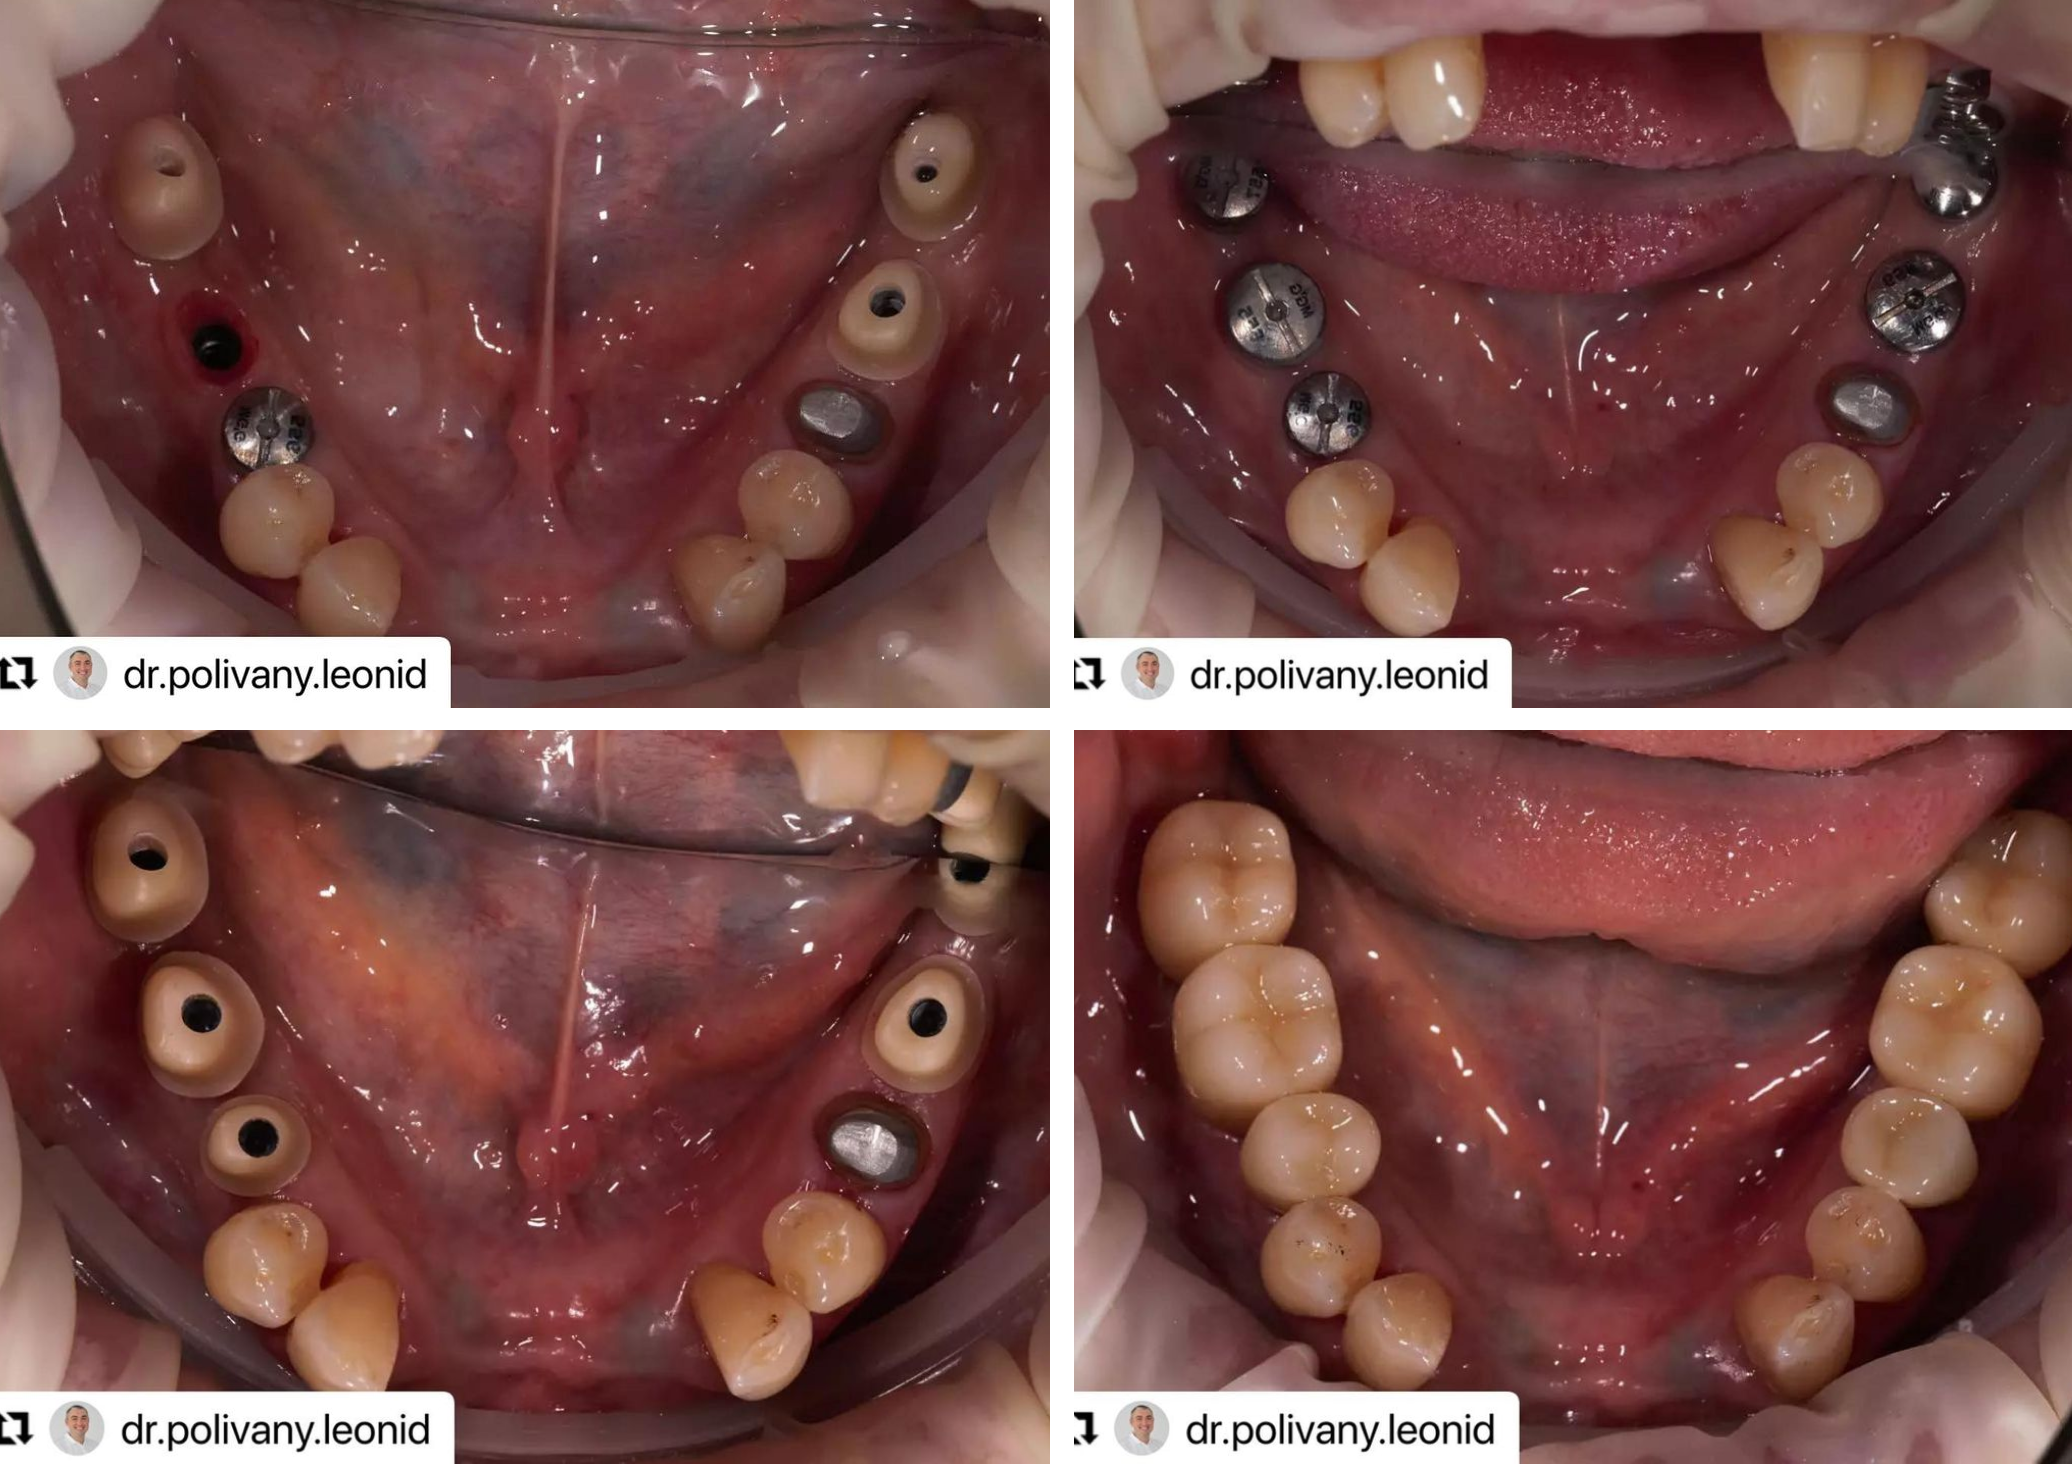 Протезирование жевательных зубов коронками из диоксид циркония на имплантах AnyRidge. Работа доктора @dr.polivany.leonid выполнена за два визита